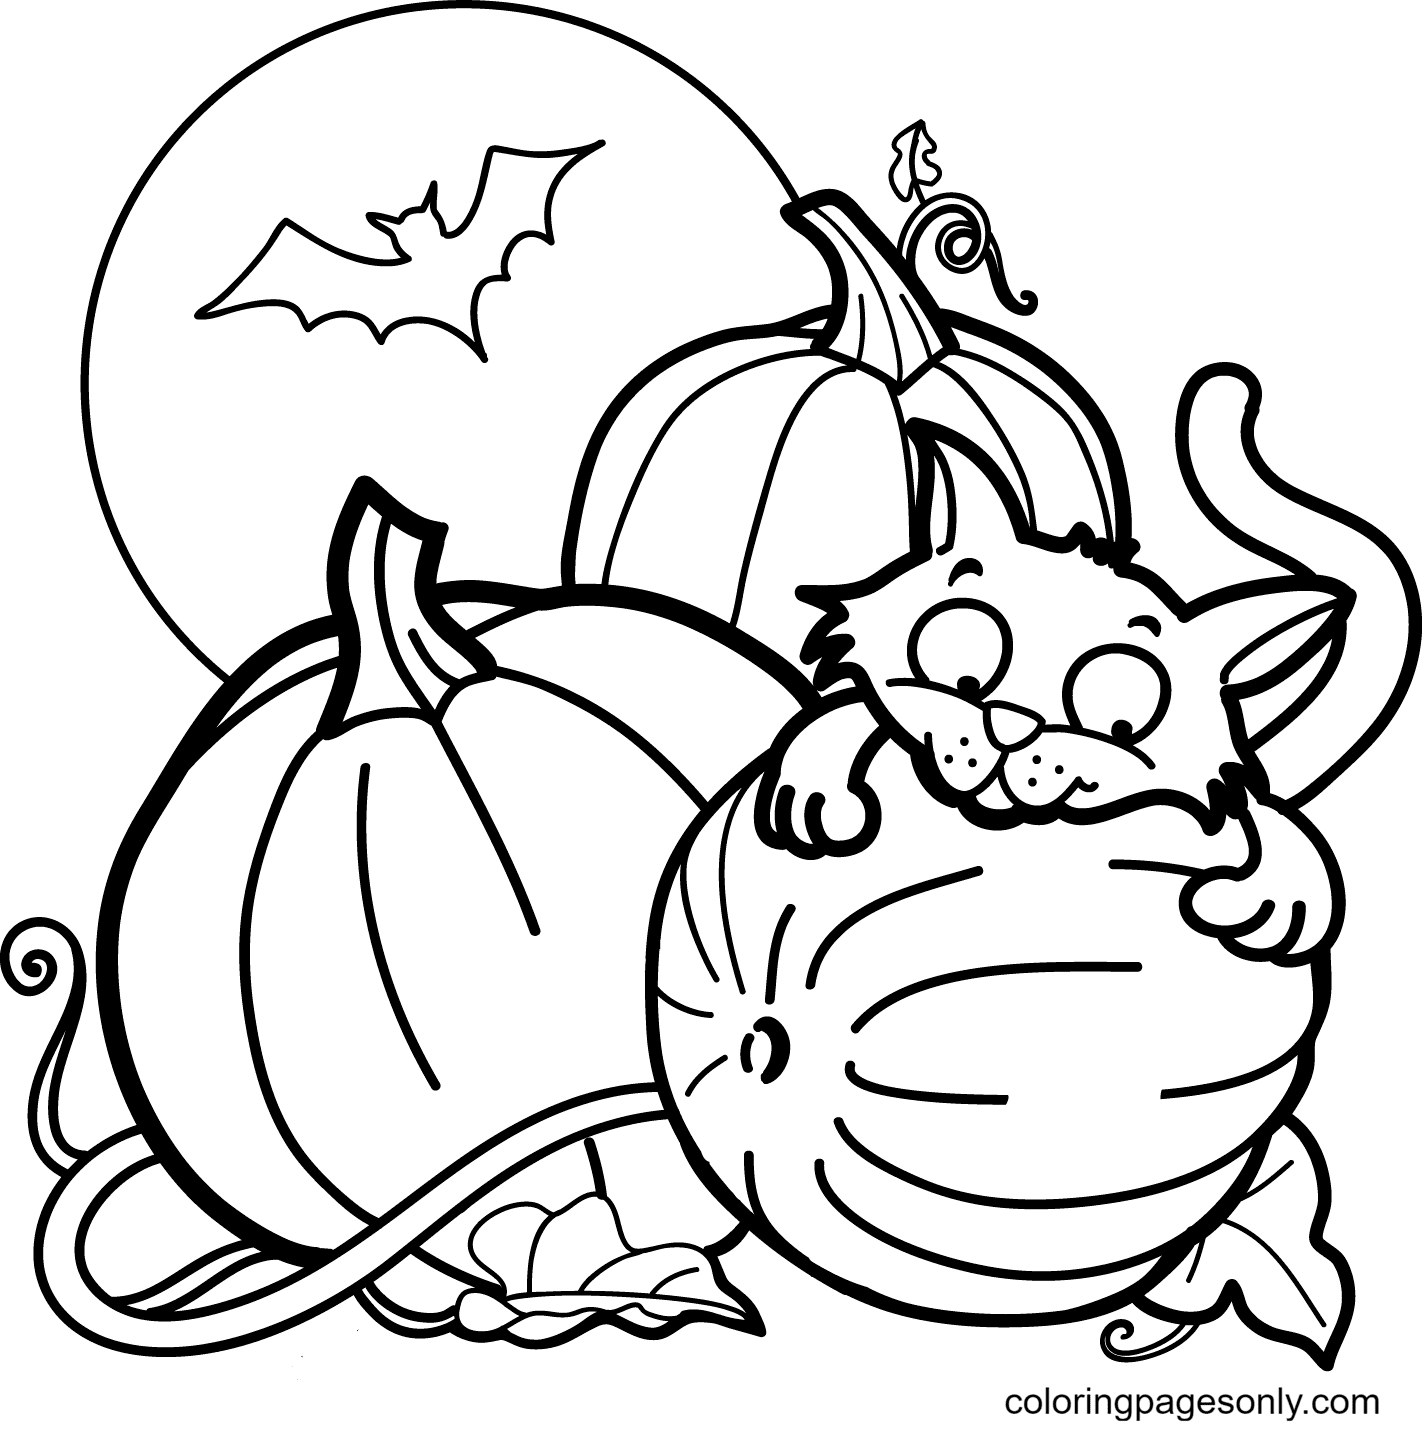 Gatto, zucca e un pipistrello per la pagina da colorare di Halloween